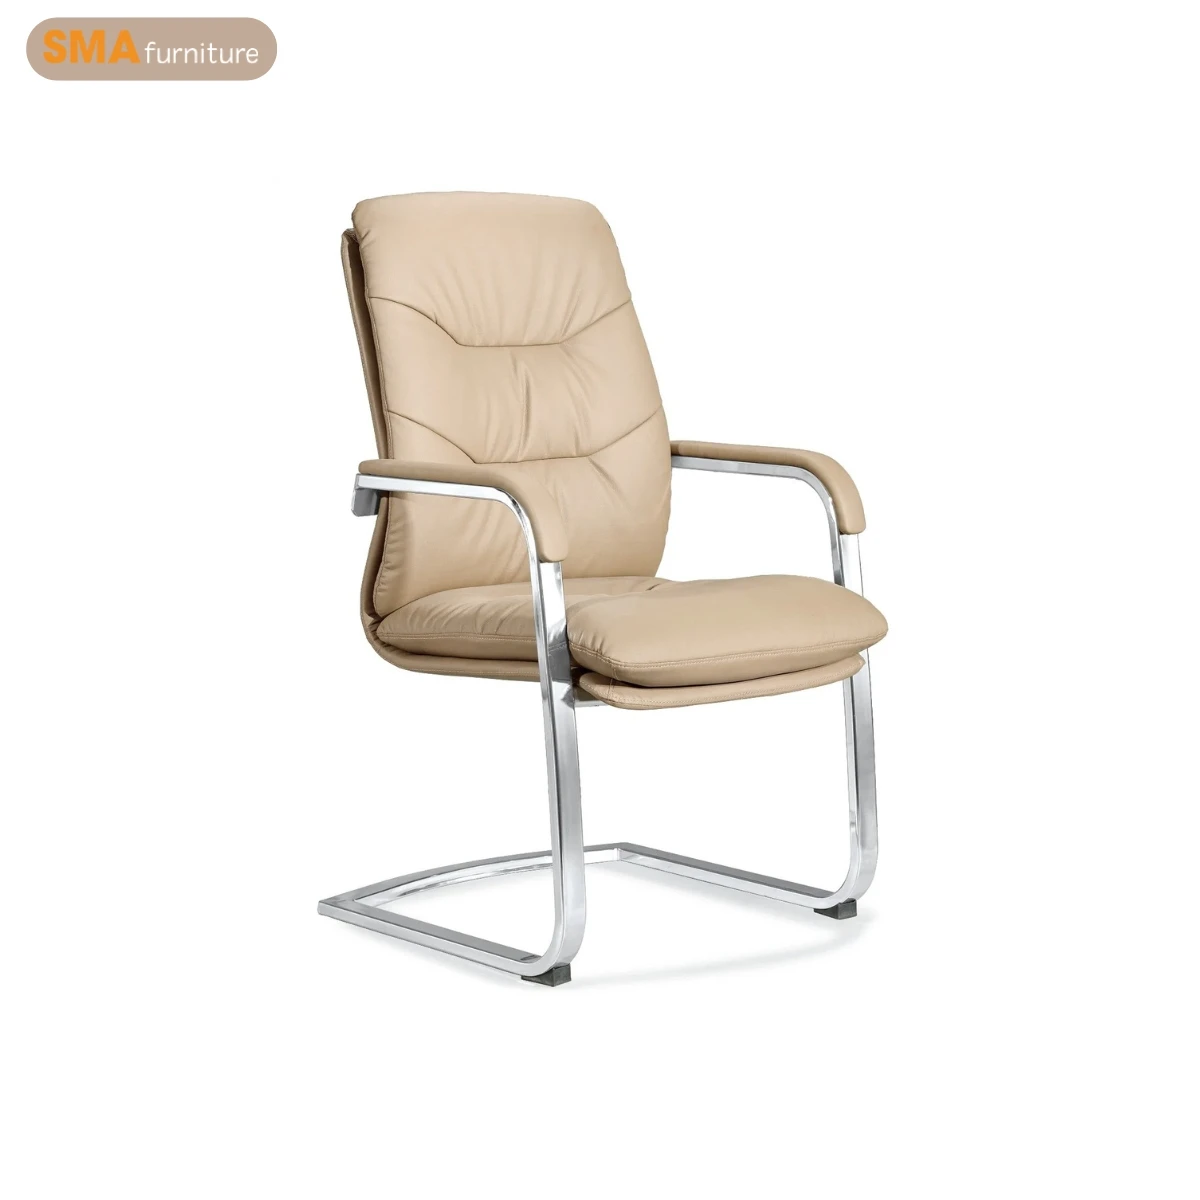 Mẫu ghế chân quỳ giá rẻ hiện đại với chân sắt tĩnh điện sơn trắng